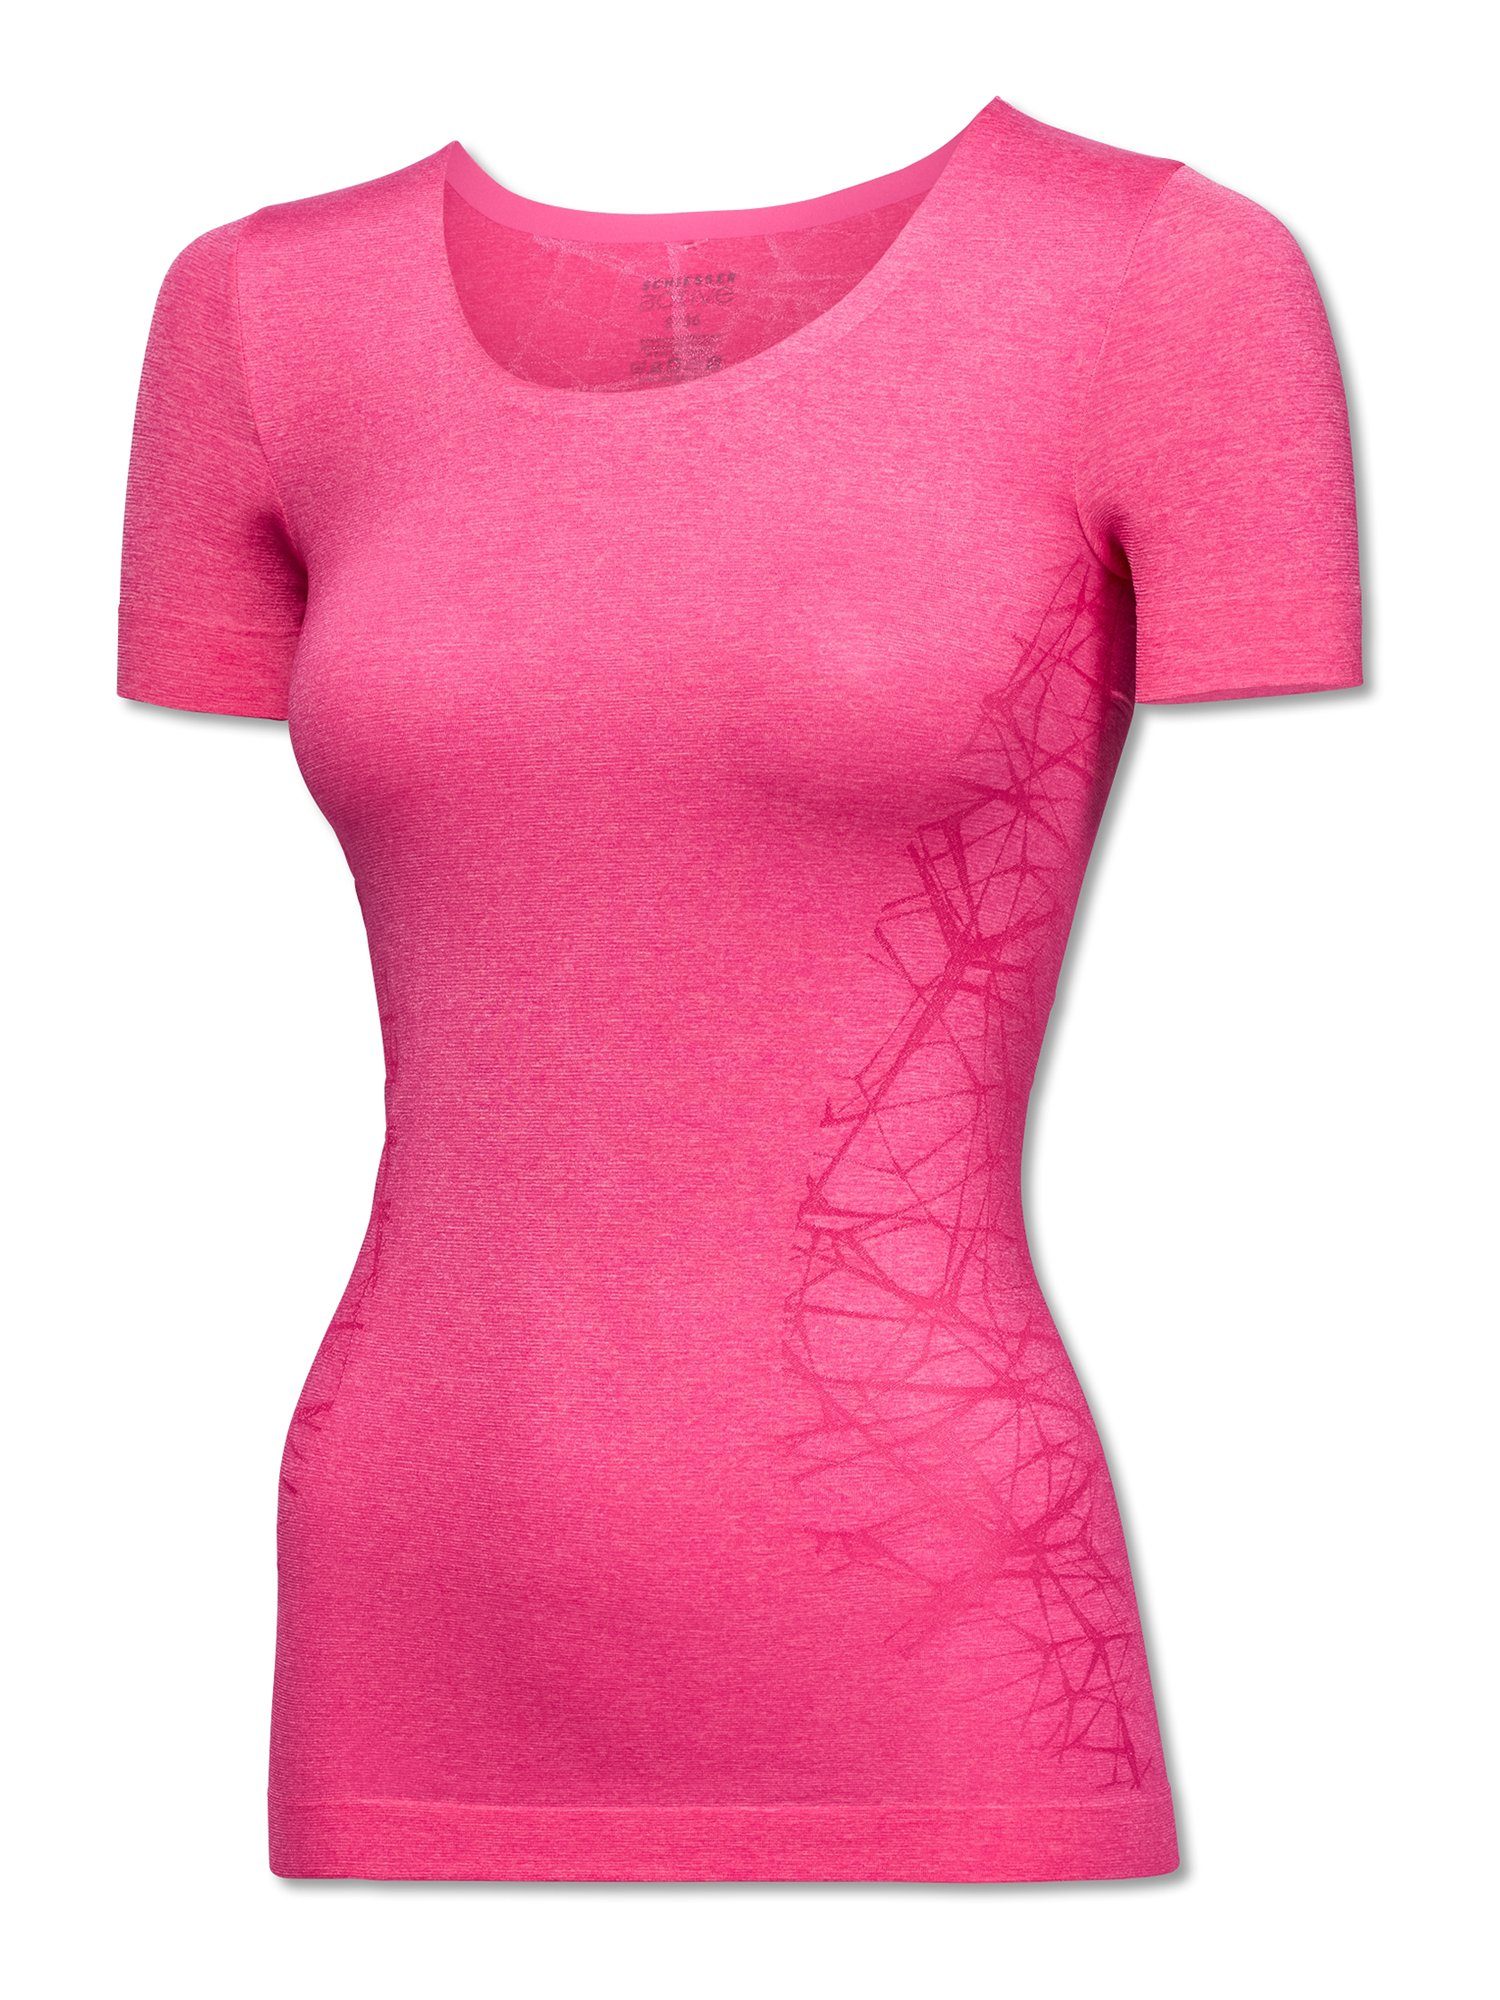 Schiesser T-Shirt Halbarm pink-mel.